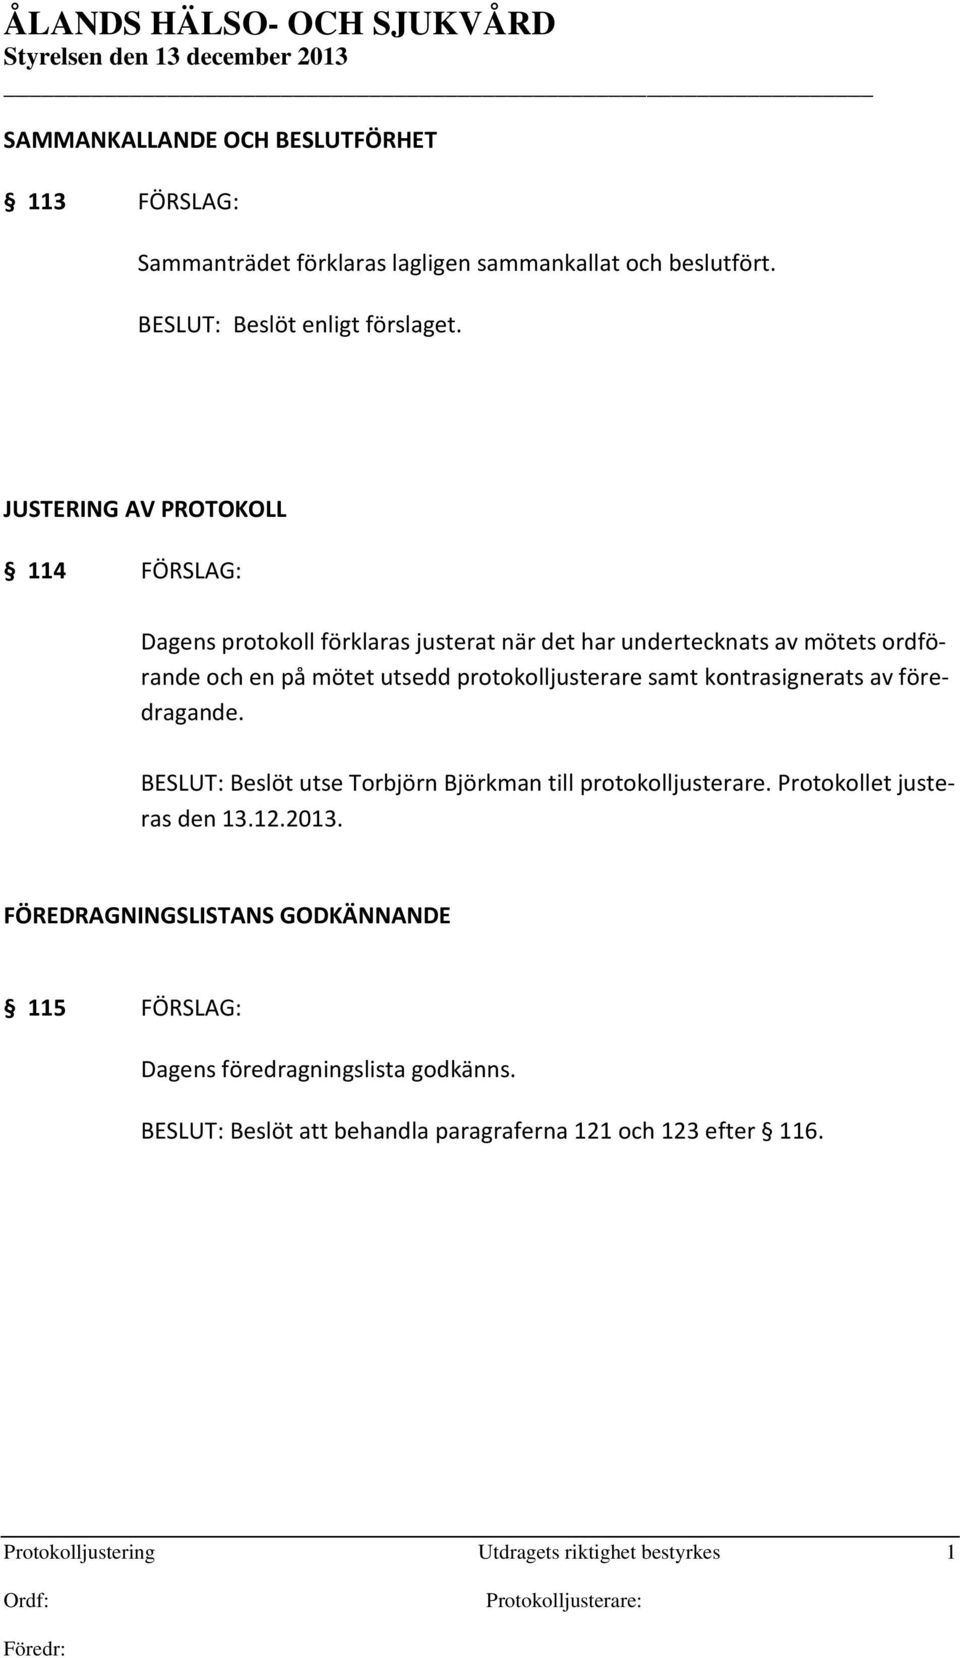 protokolljusterare samt kontrasignerats av föredragande. BESLUT: Beslöt utse Torbjörn Björkman till protokolljusterare. Protokollet justeras den 13.12.2013.